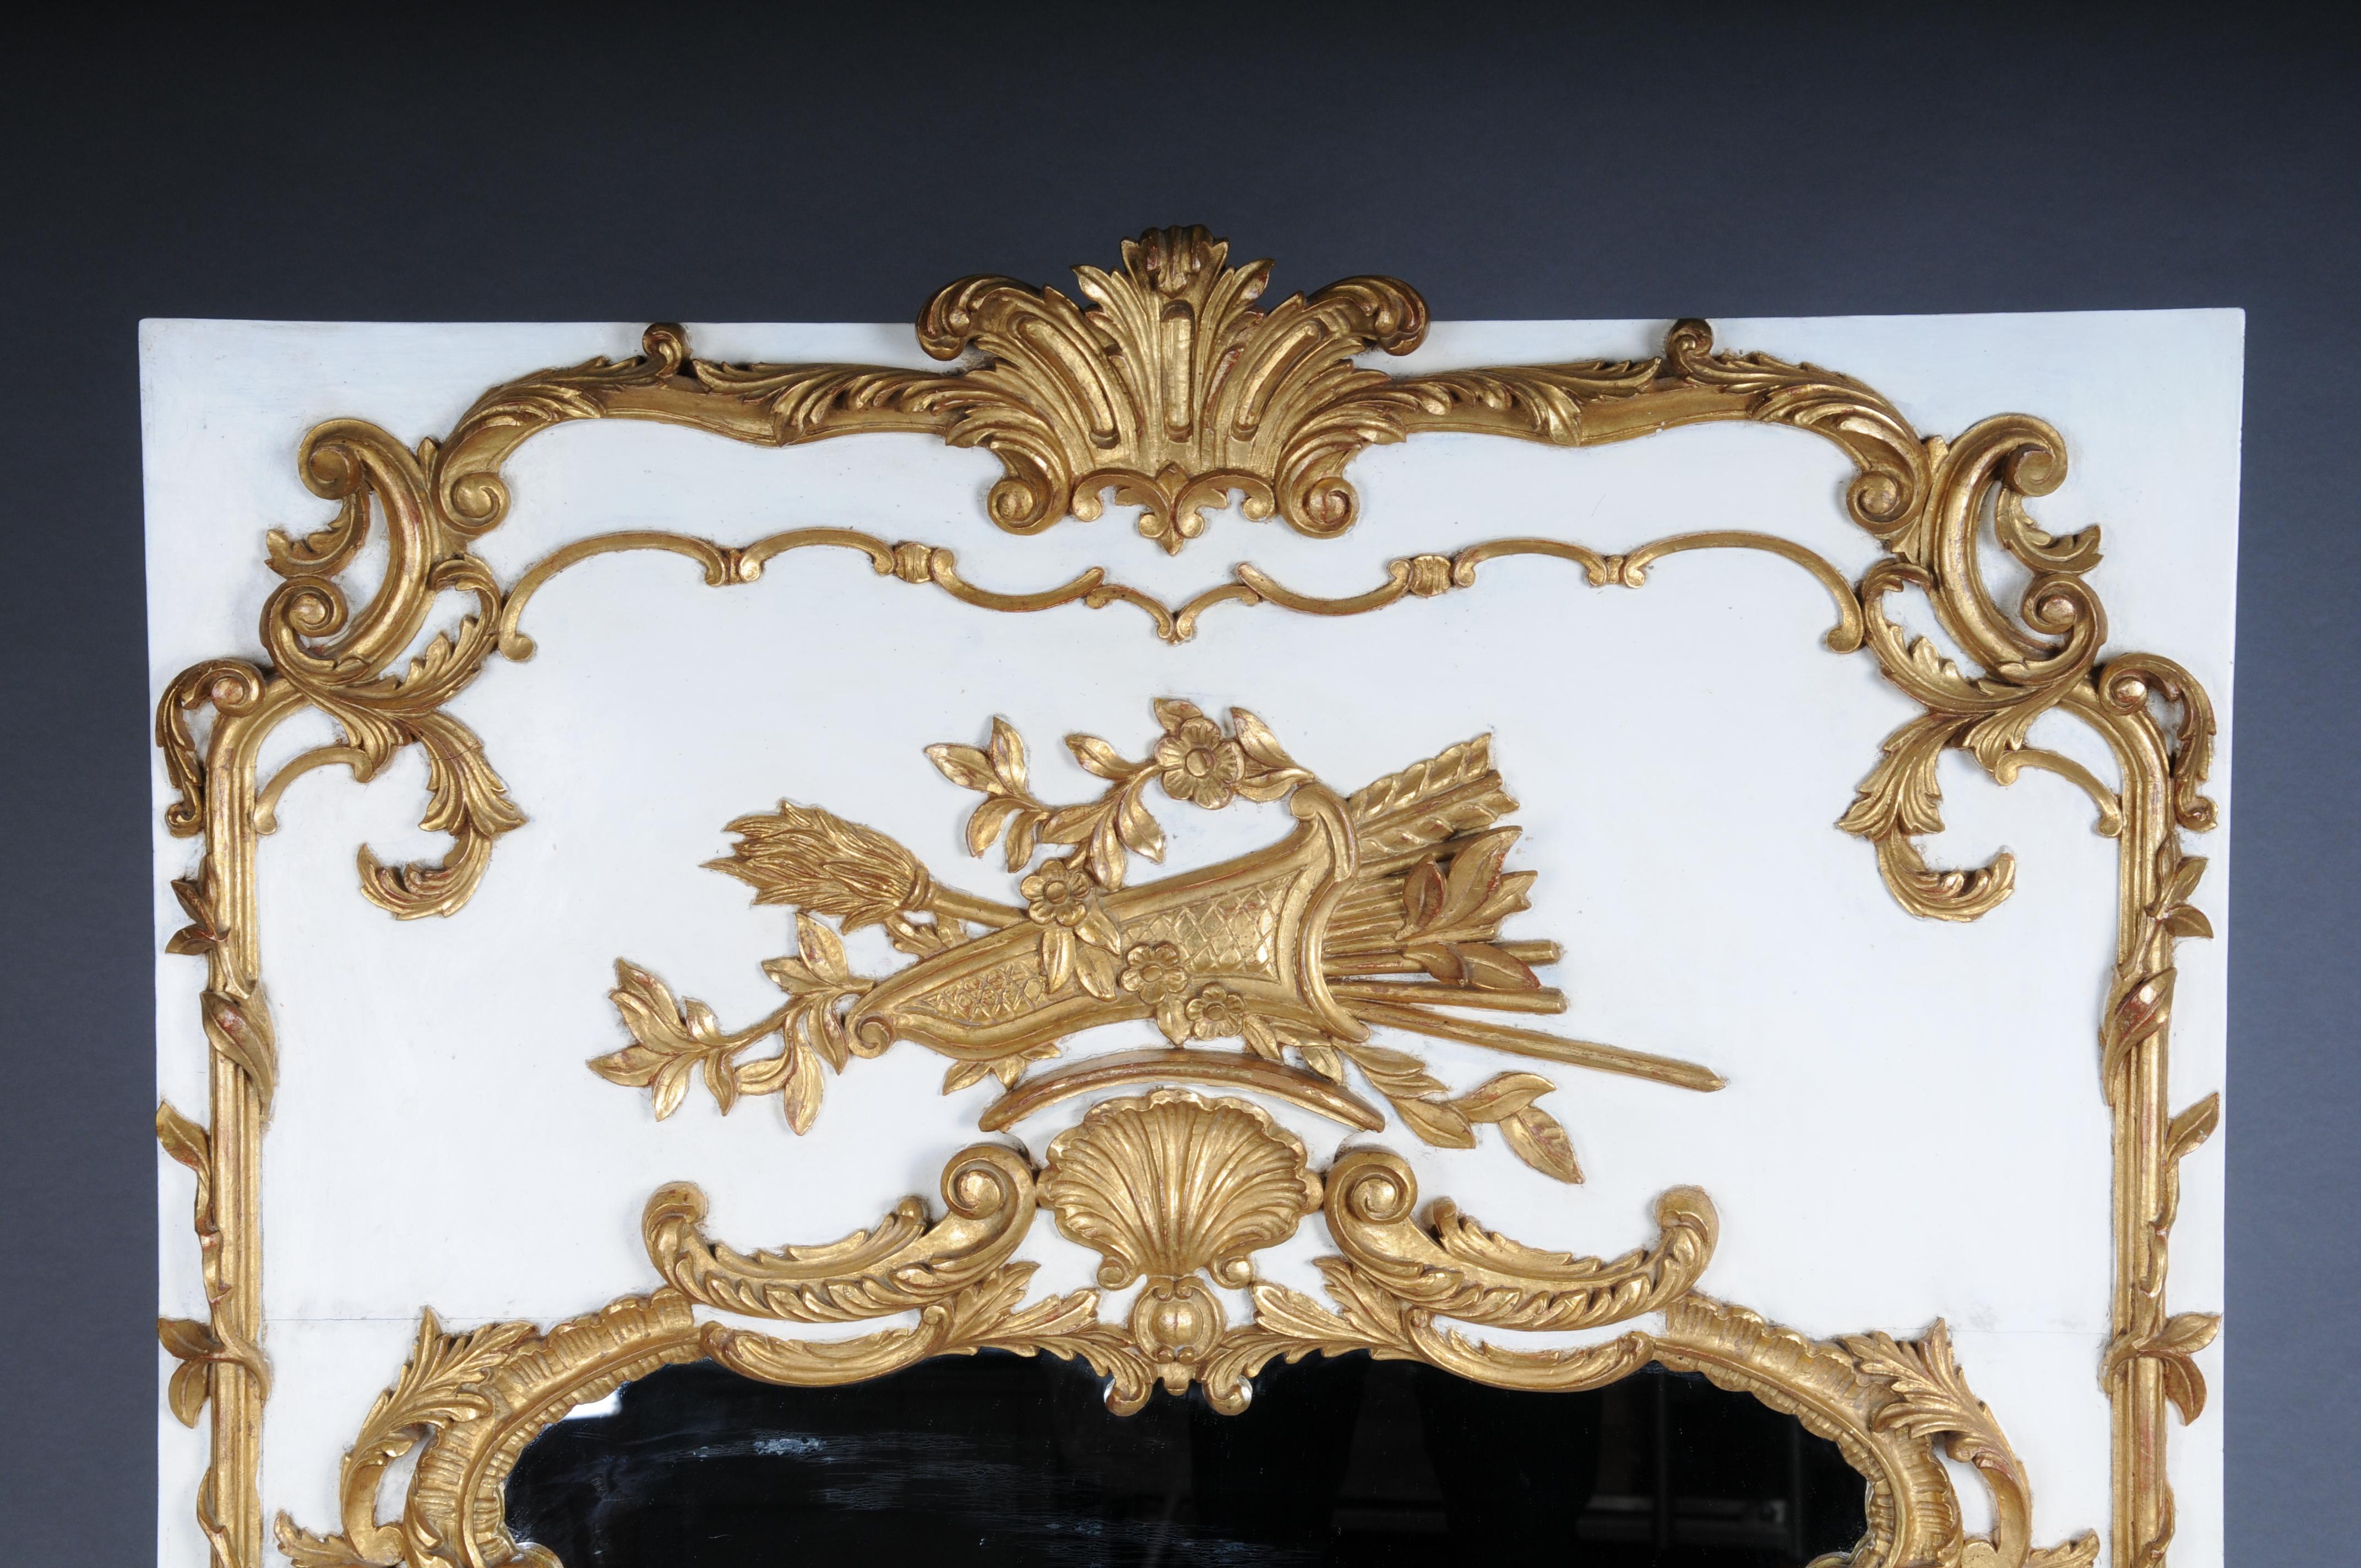 Vergoldeter Wandspiegel im Louis XV-Stil des 20. Jahrhunderts, weiß

Hochrechteckiger Holzkorpus mit reich verzierten, geschnitzten Dekorelementen auf weißem Grund, bekrönt von einem Köcher und Pfeilen. Äußerst dekorativ und edel. Fein geschnitzte